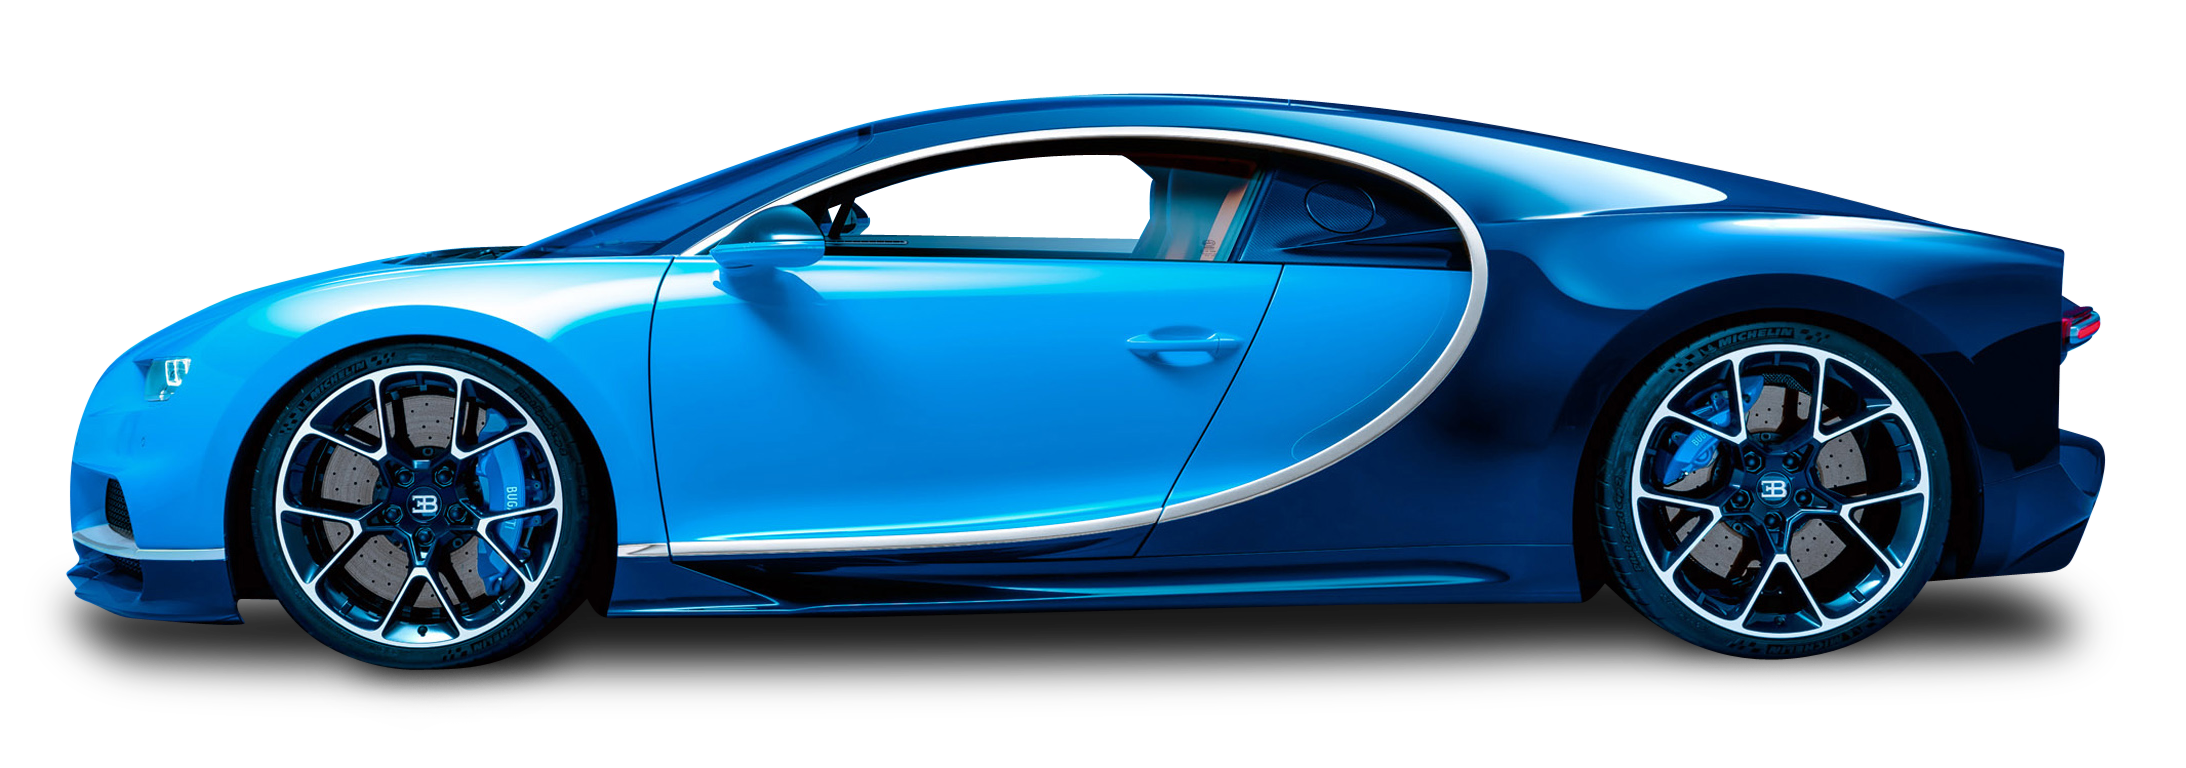 Blue Bugatti Chiron Car PNG Image